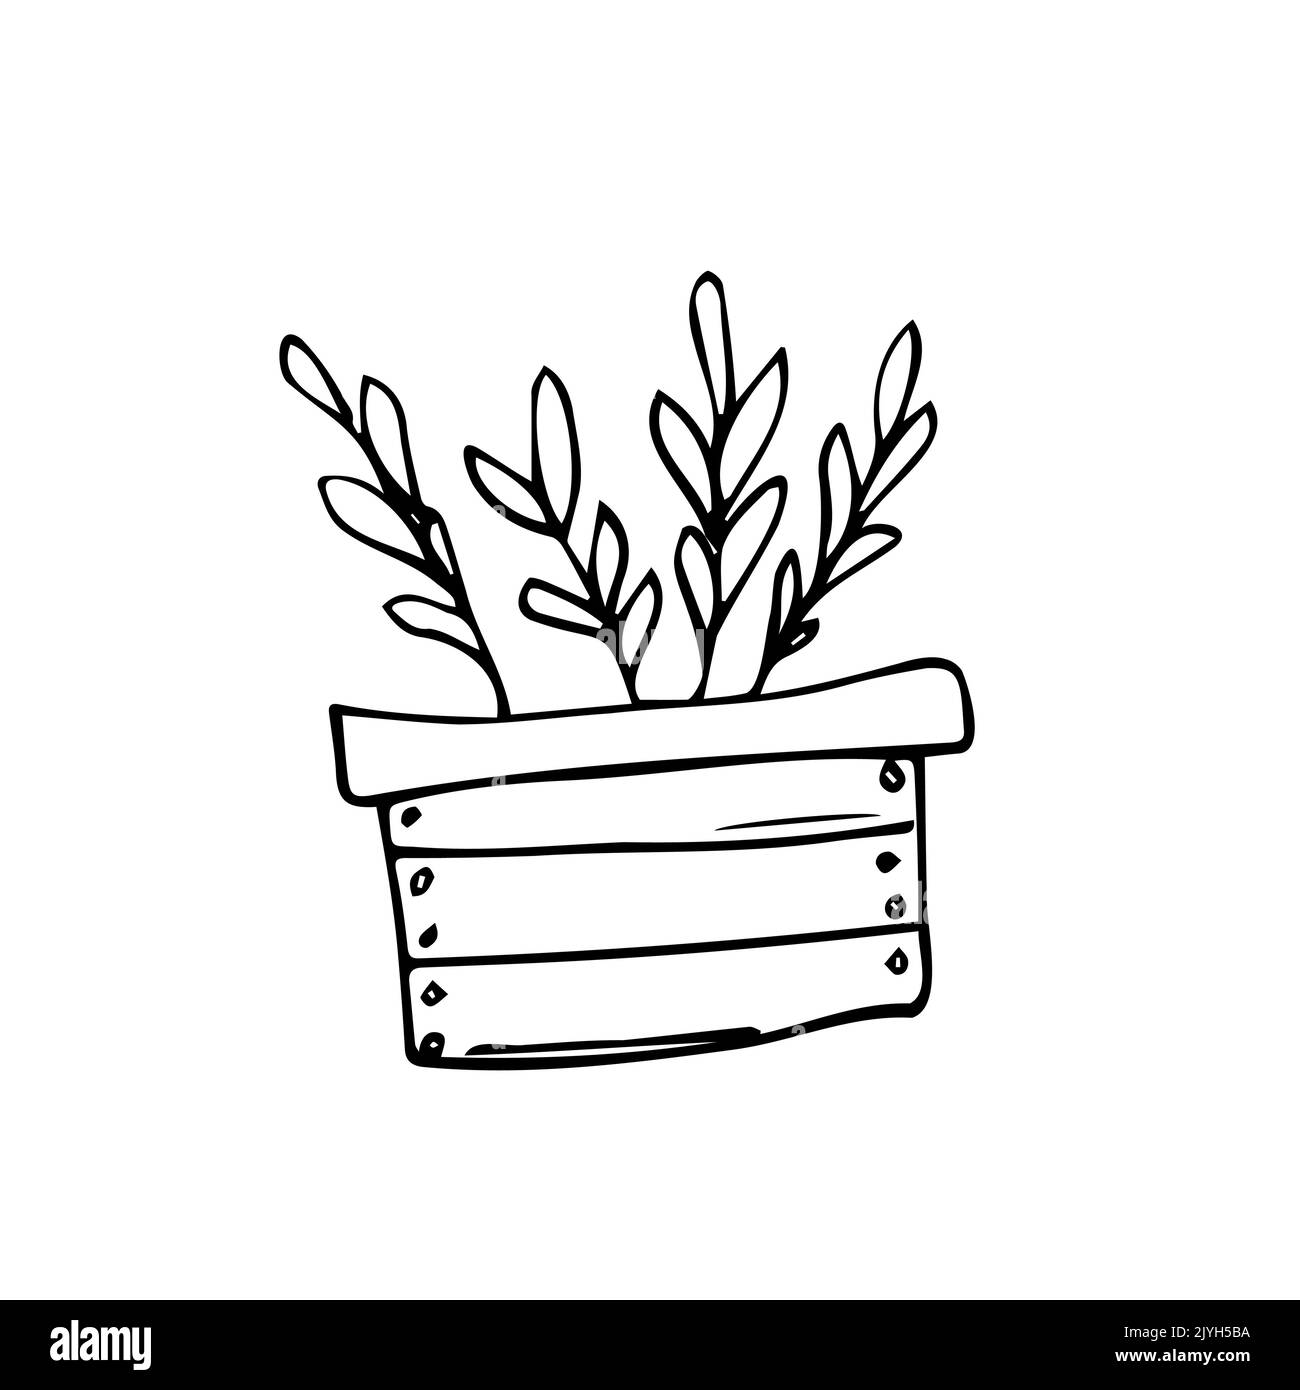 Holzkiste mit wachsenden Pflanzen. Pflanzvorgang. Home Gardening, Gartenbau Pflege für die Umwelt Konzept. Vektorgrafik im Cartoon-Stil. Stock Vektor